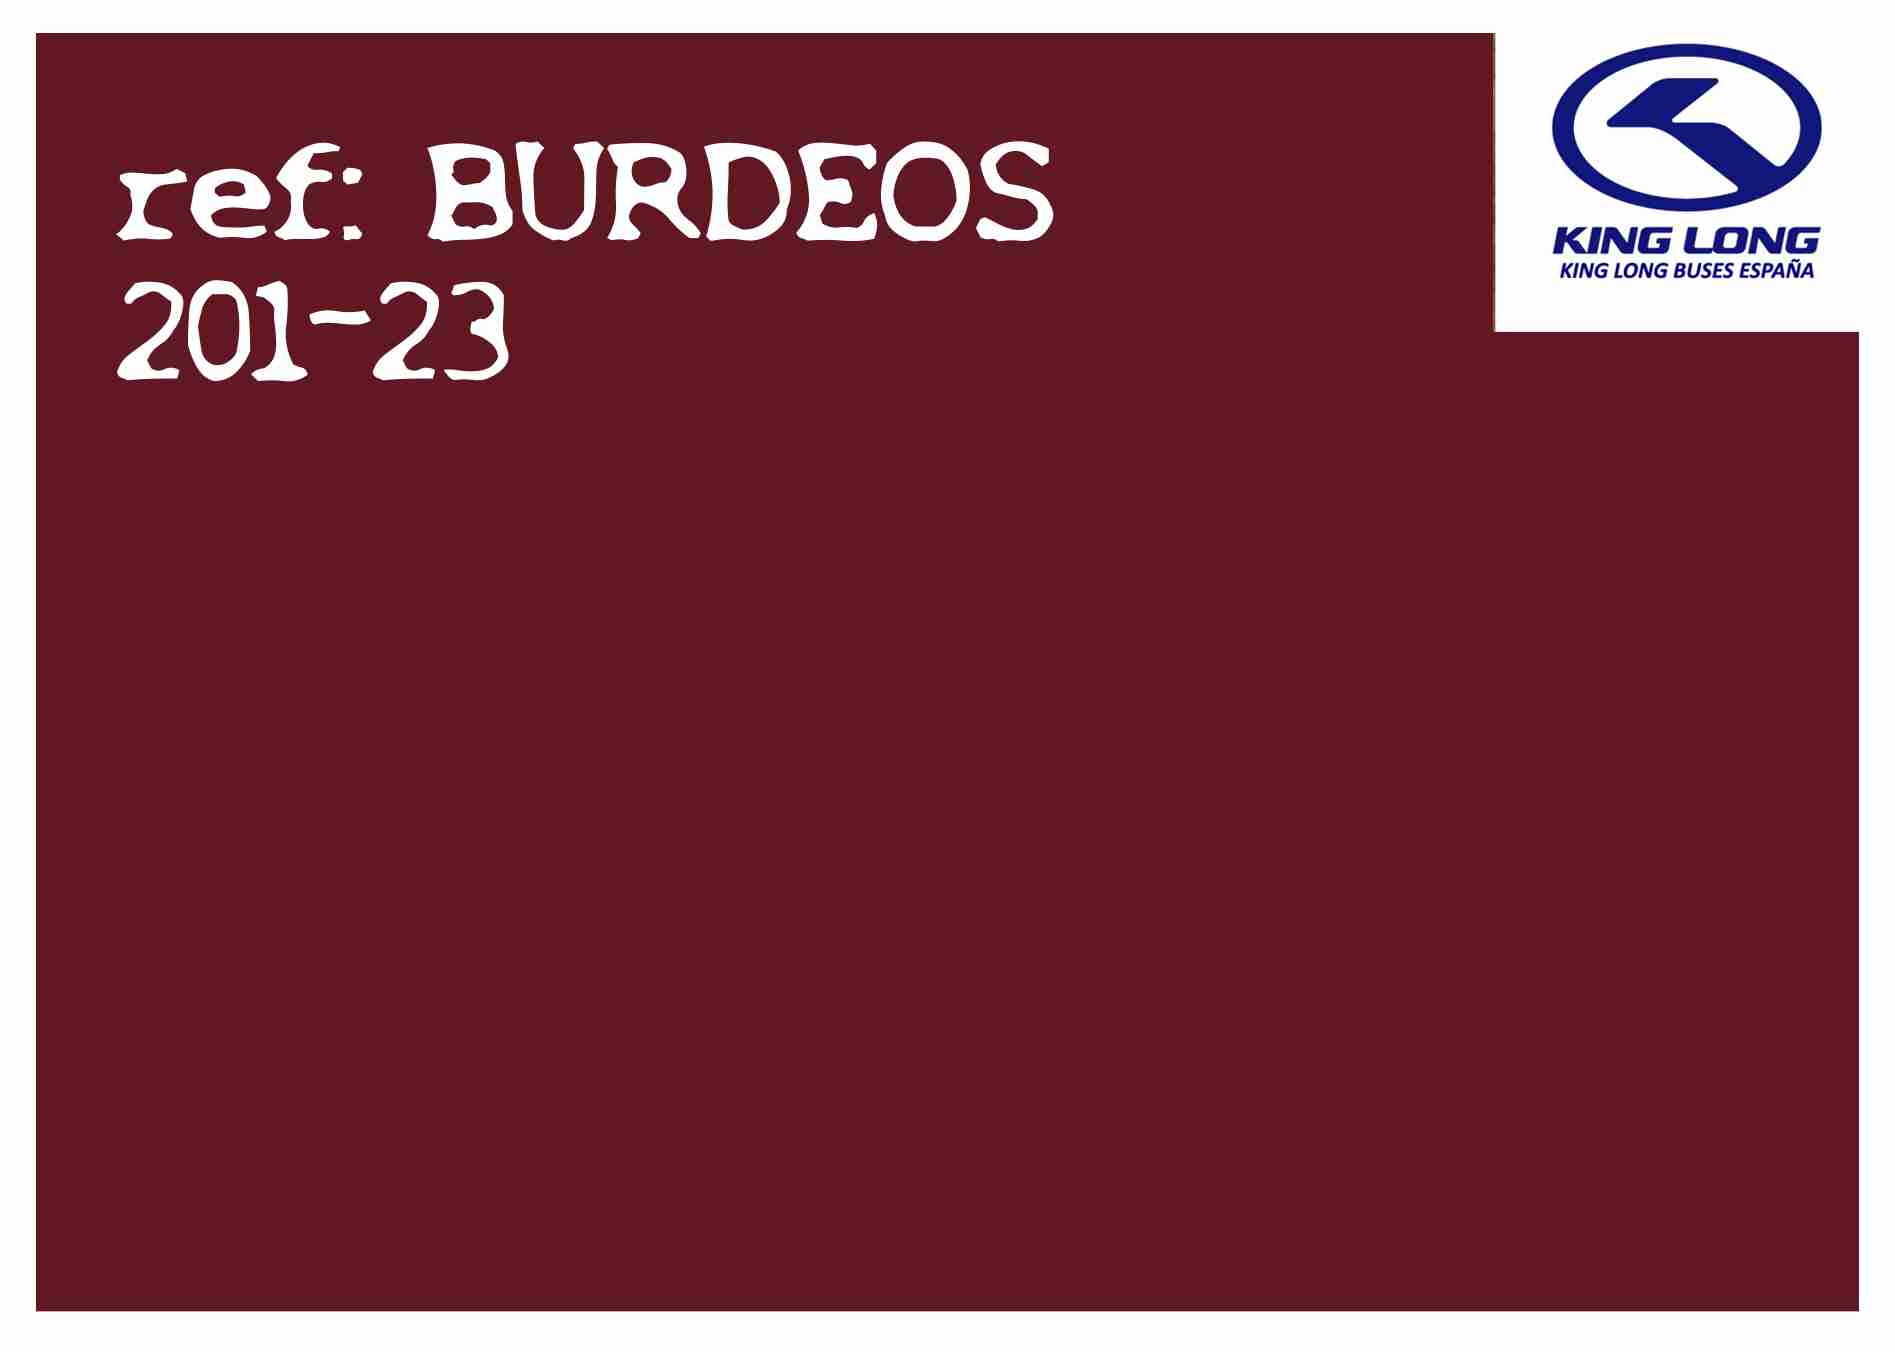 BURDEOS201-23